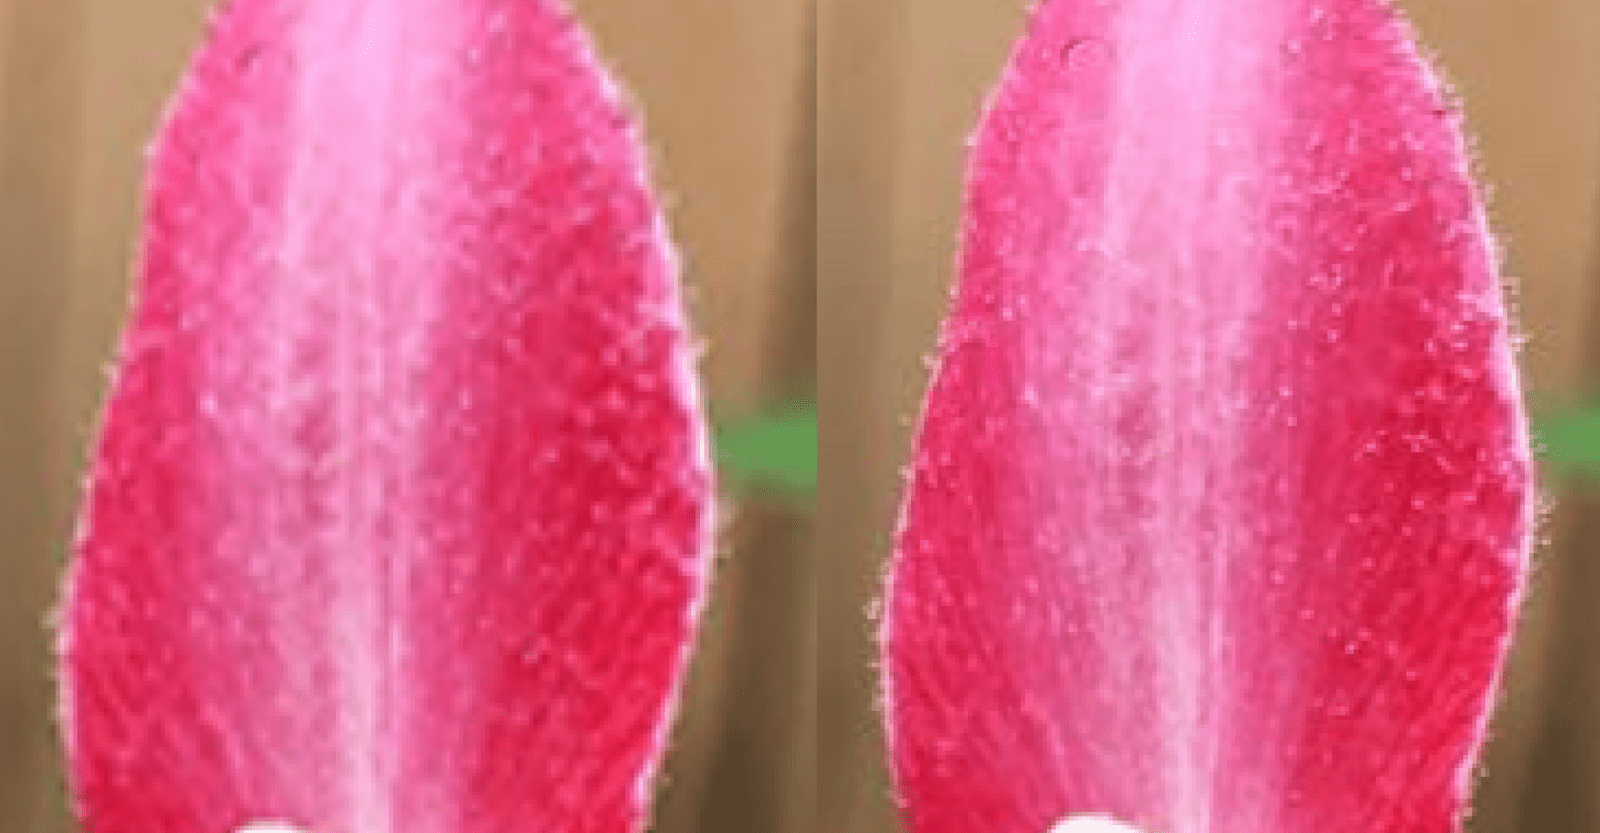 ภาพระยะใกล้ของกลีบดอกไม้ที่แสดงความหนาแน่นของความคลาดเคลื่อน